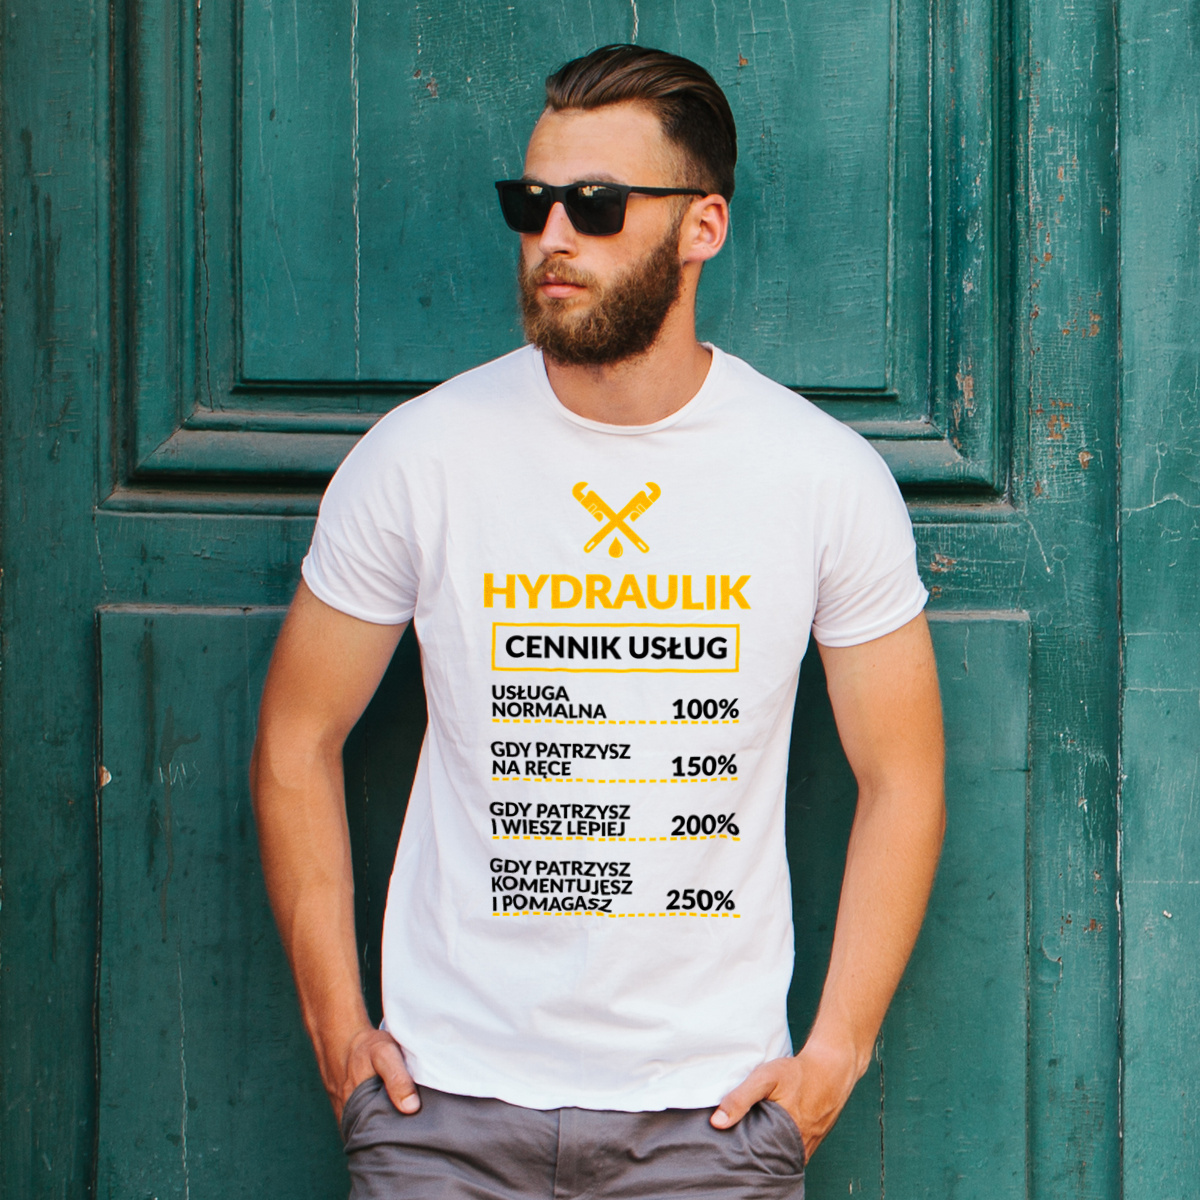 Hydraulik - Cennik Usług - Męska Koszulka Biała